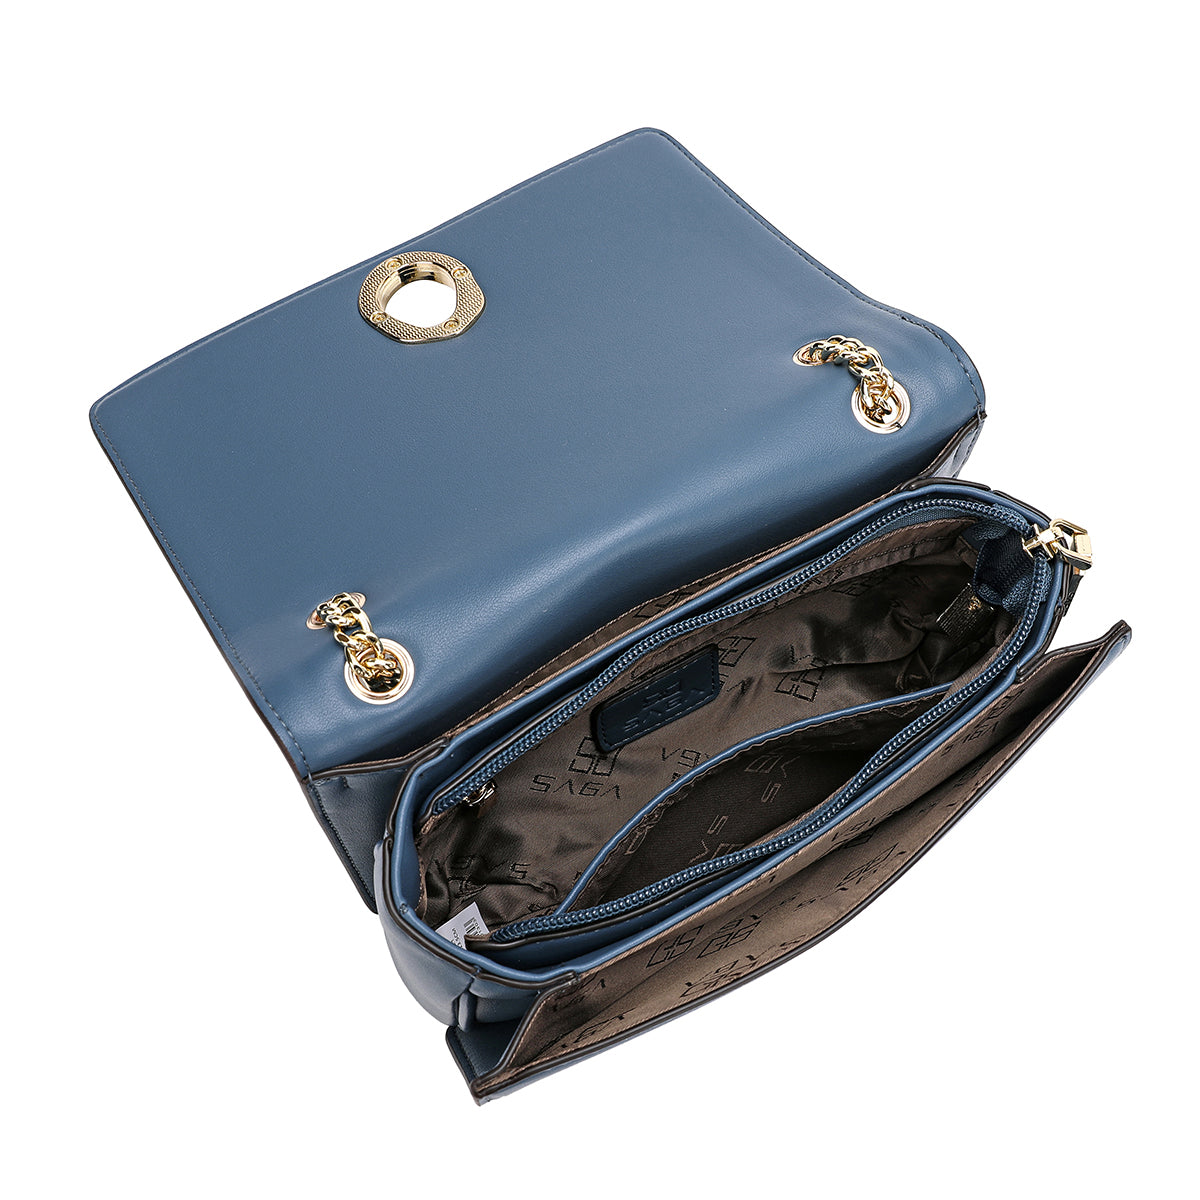 حقيبة نسائية رائعة بحمالات من ساغا عرض 20سم، اللون ازرق